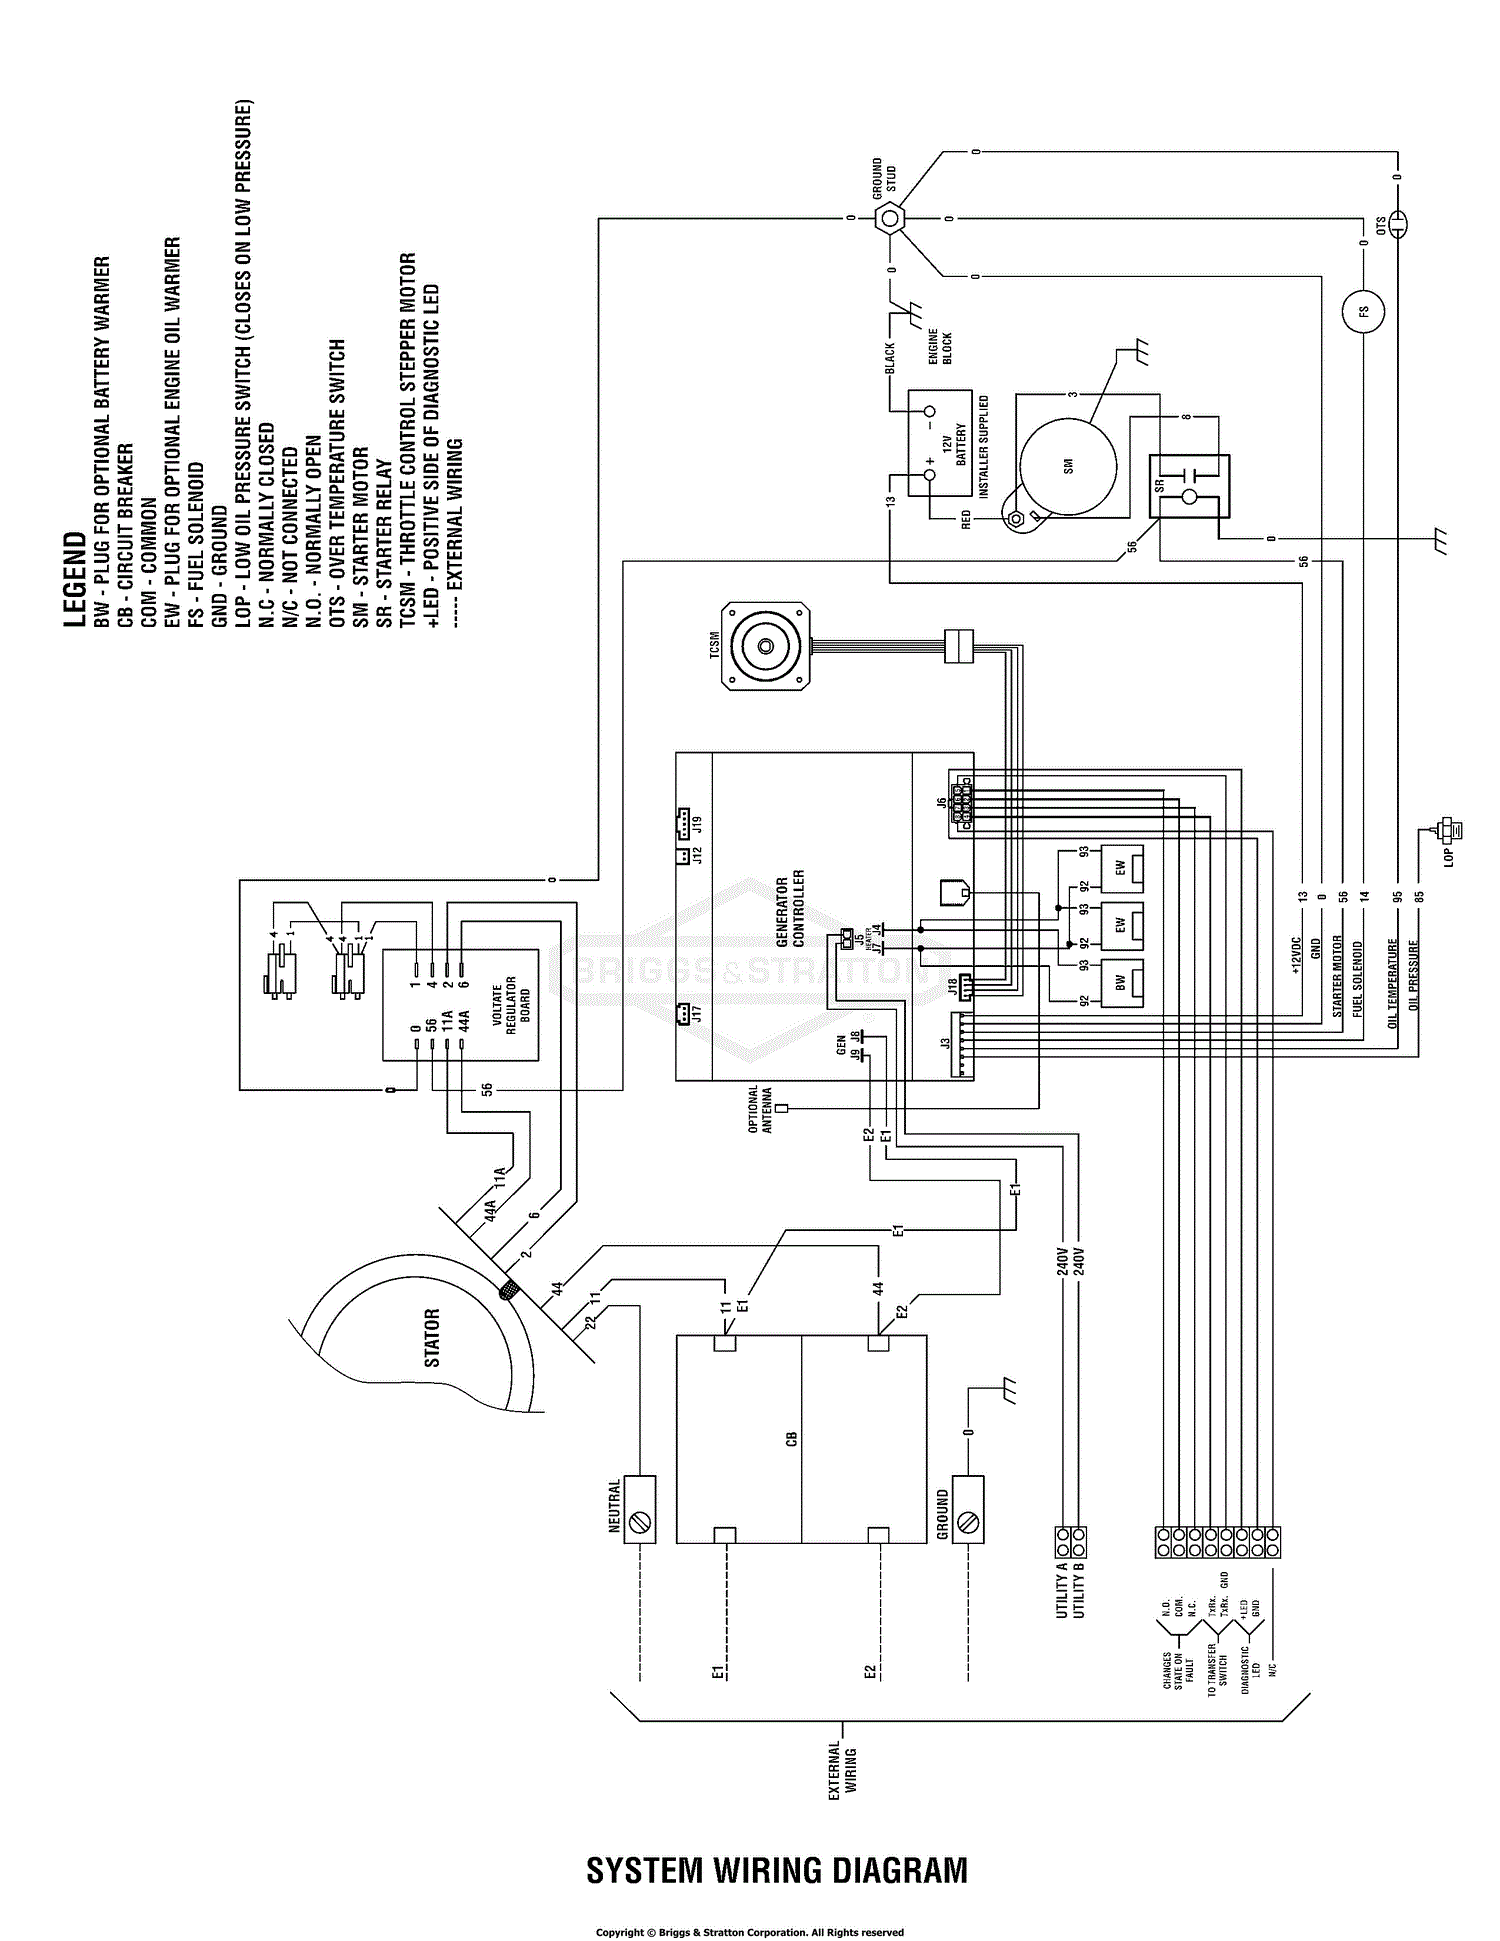 Generac Standby Generator Wiring Diagram - Wiring View and Schematics